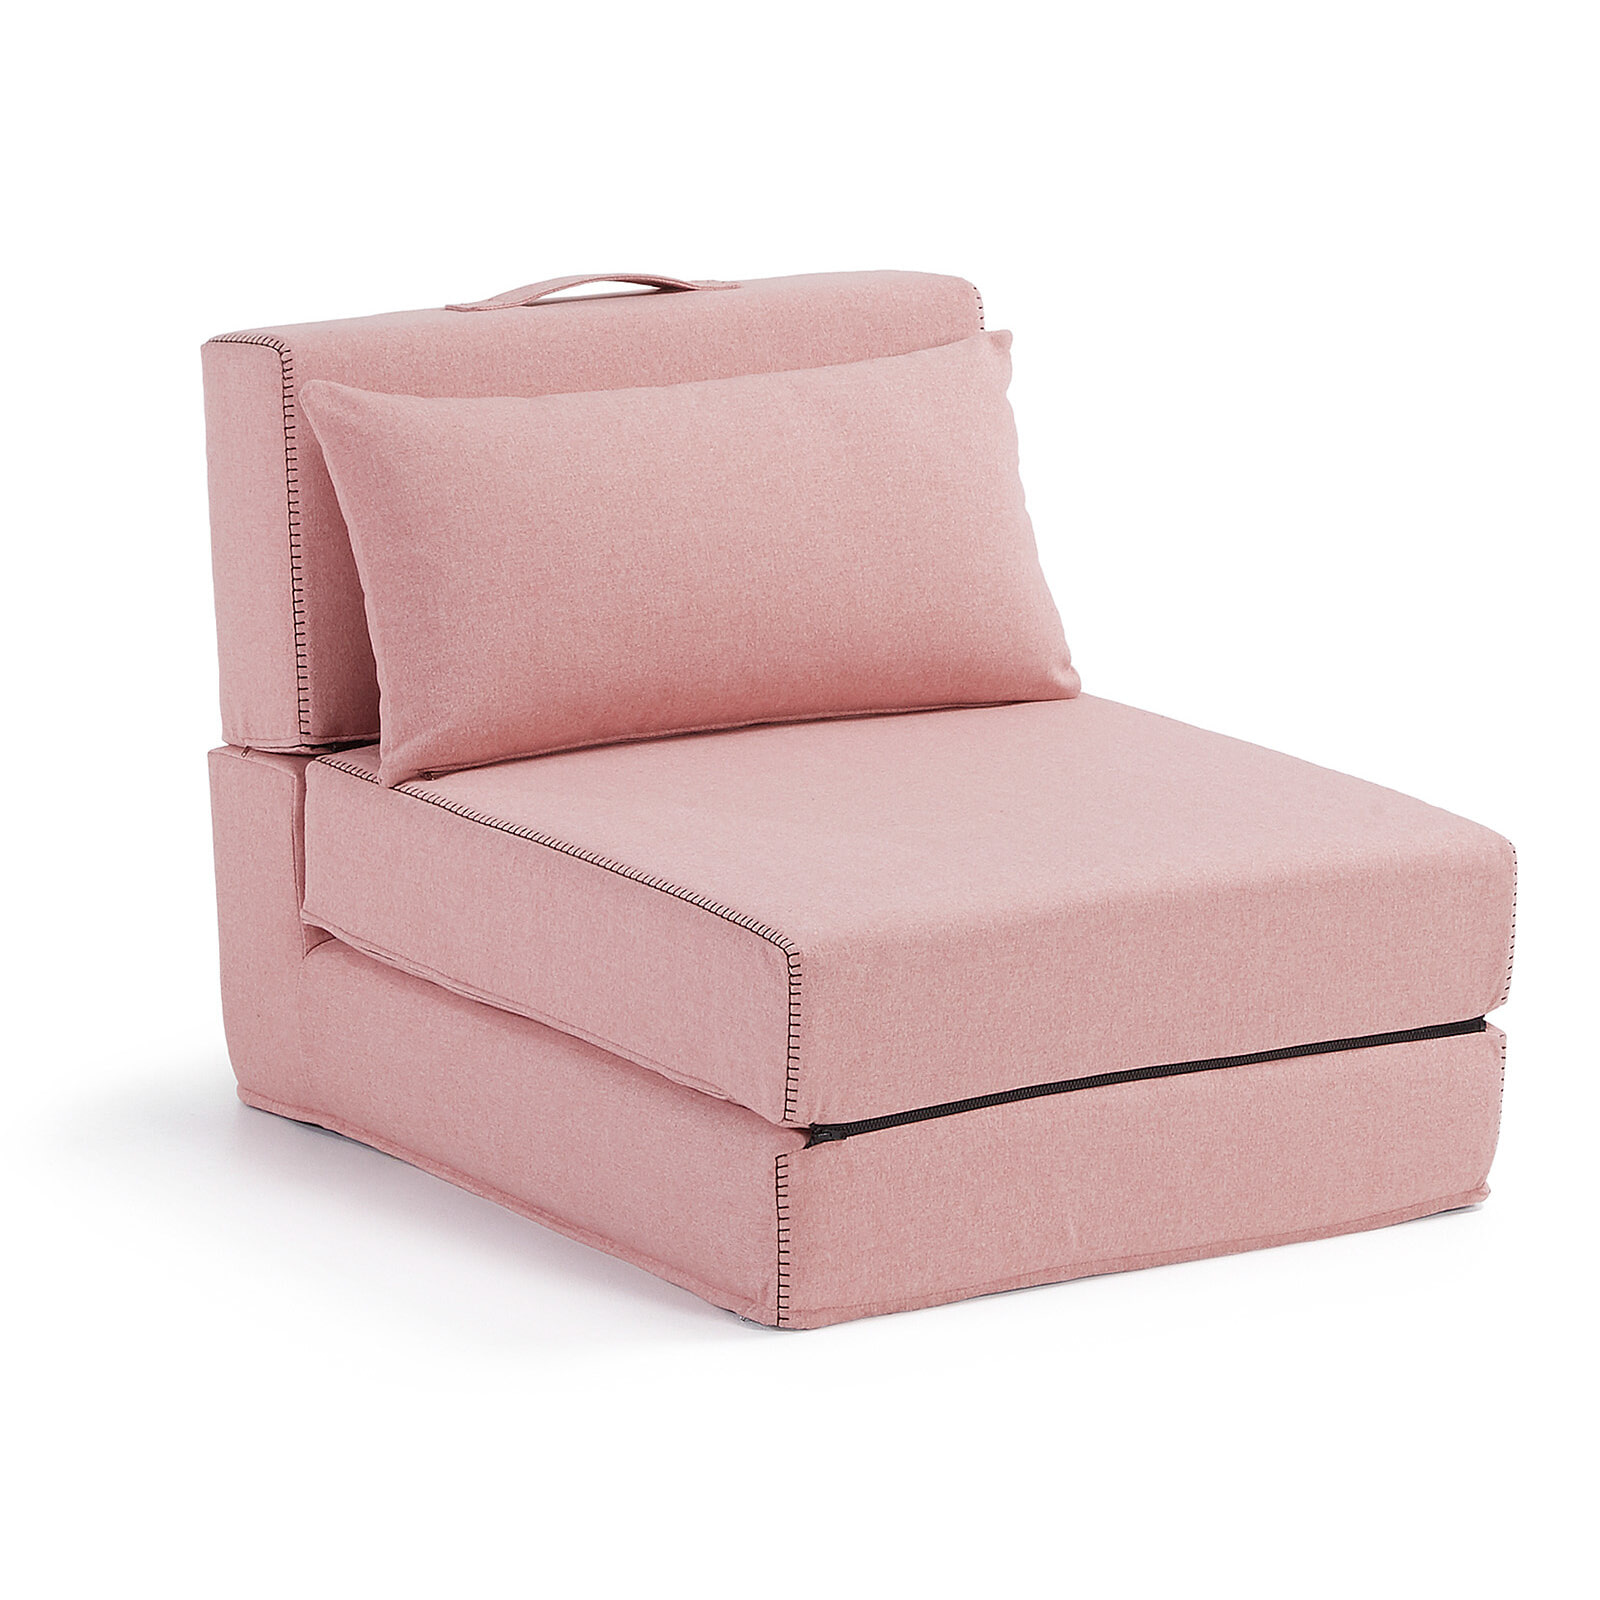 Op BadkamersOutlet: Alles voor uw badkamer is alles over gadgets te vinden: waaronder meubelpartner en specifiek Kave Home Vouwbed Arty kleur roze (Kave-Home-Vouwbed-Arty-kleur-roze23031|2)